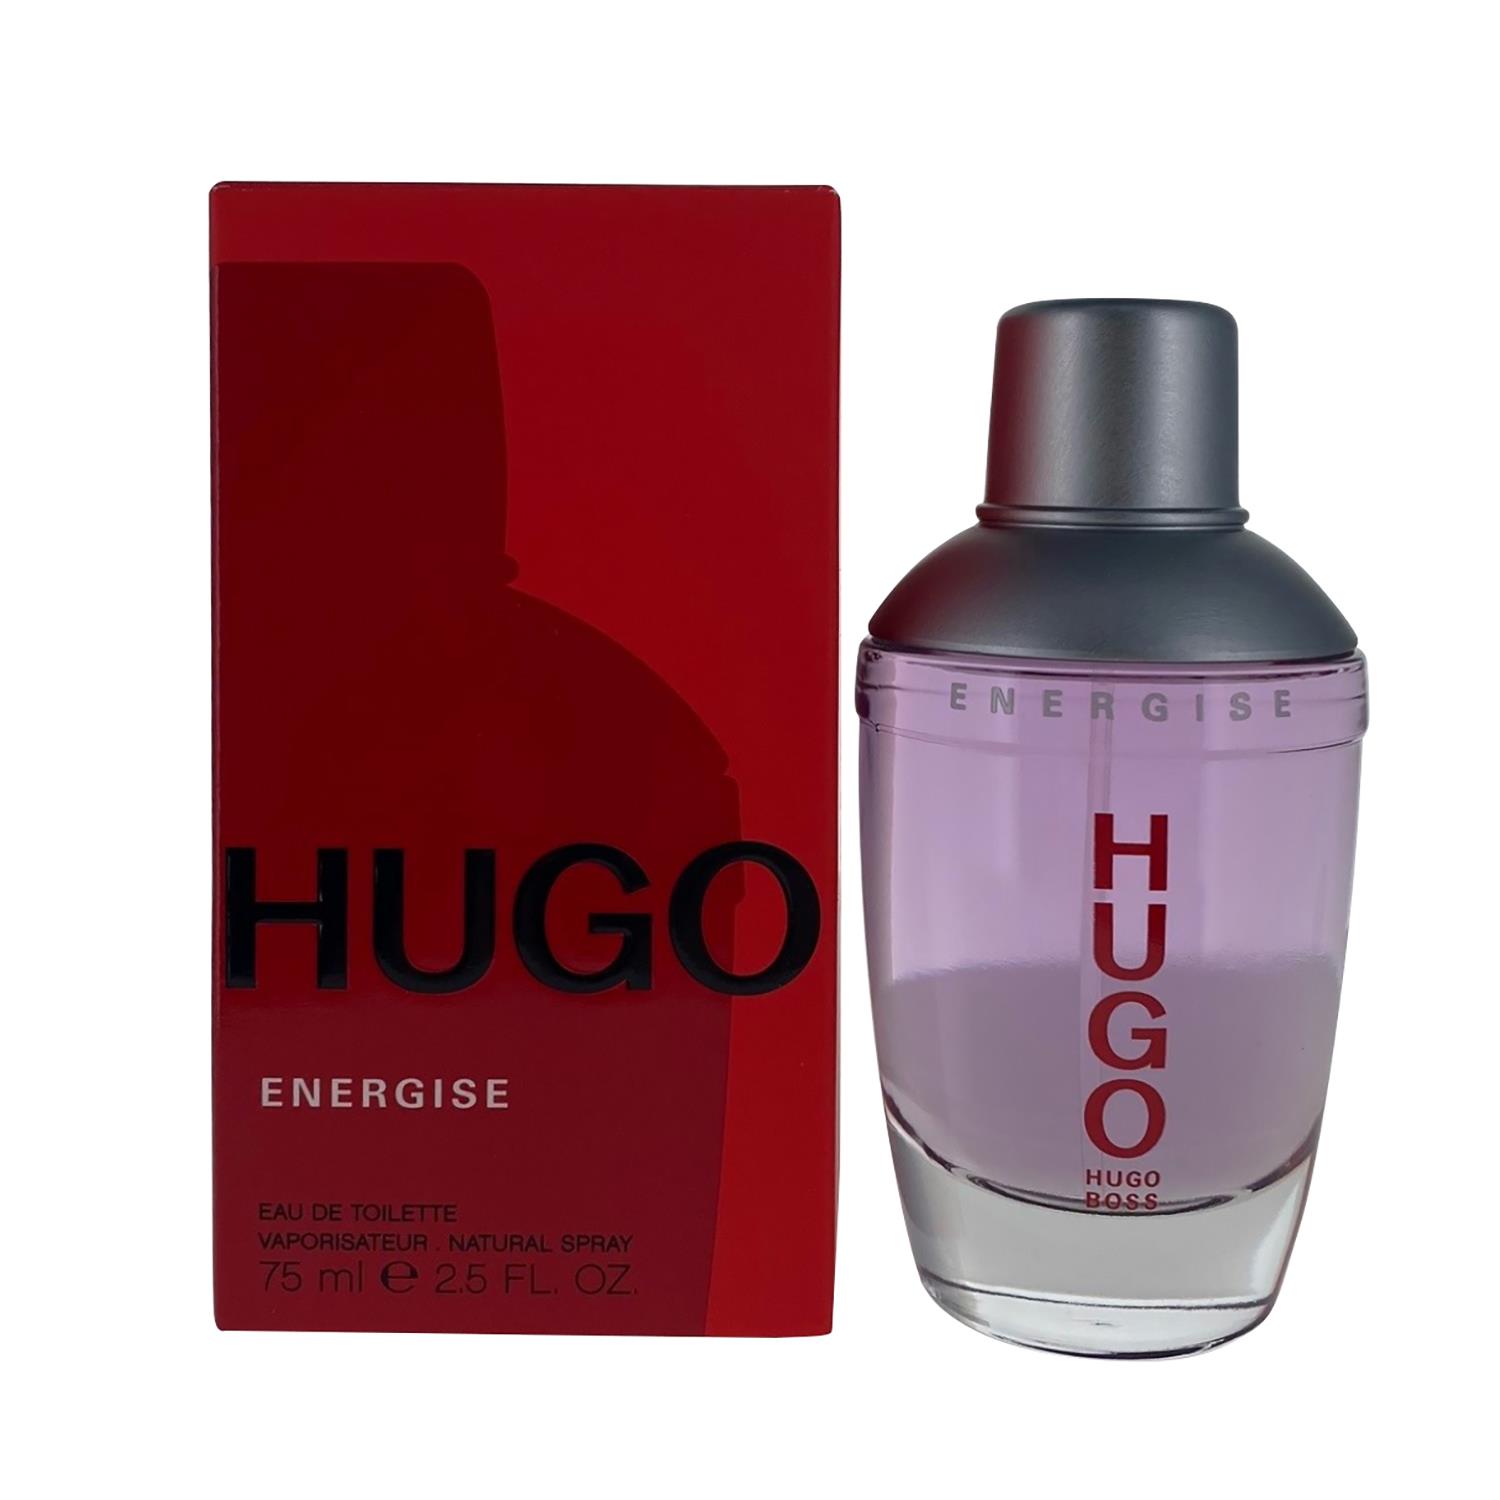 Hugo Boss Hugo Energise 75ml Eau de Toilette Spray for Him from Perfume Plus Direct